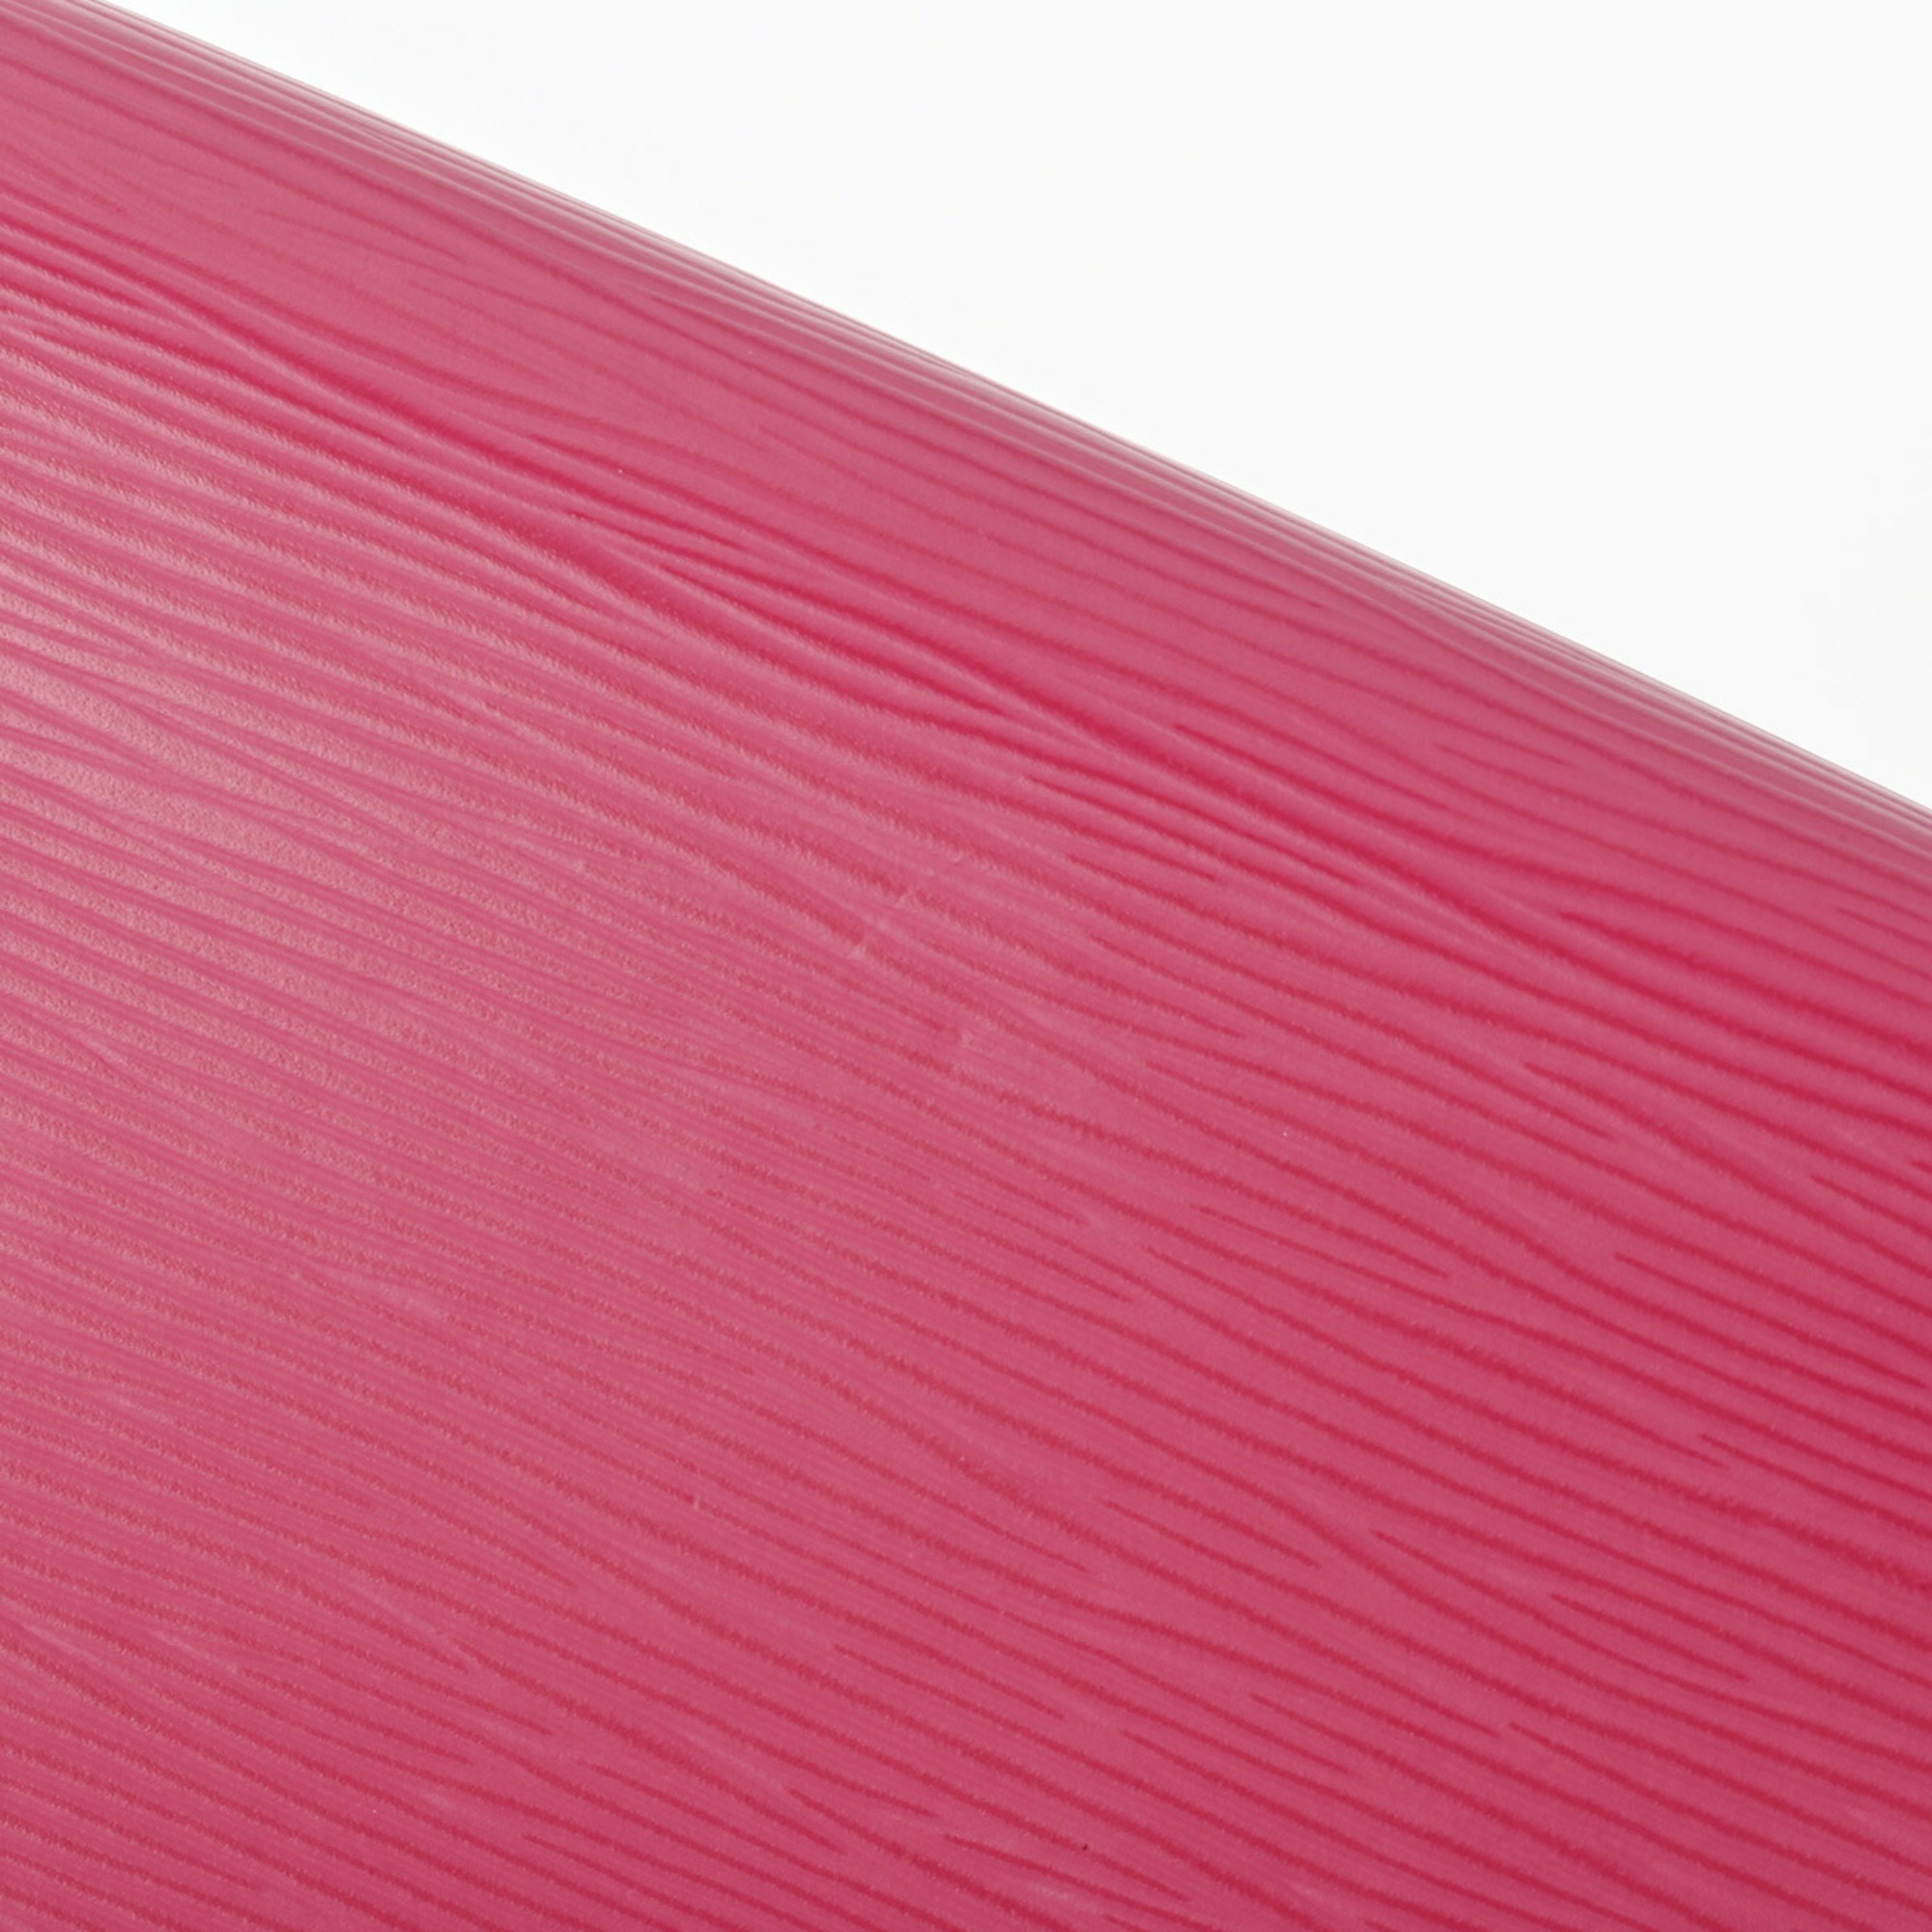 LOUIS VUITTON Epi Pochette Felicie Chain Wallet Pink/Blue/Light Pink M61754 Women's Leather Shoulder Bag